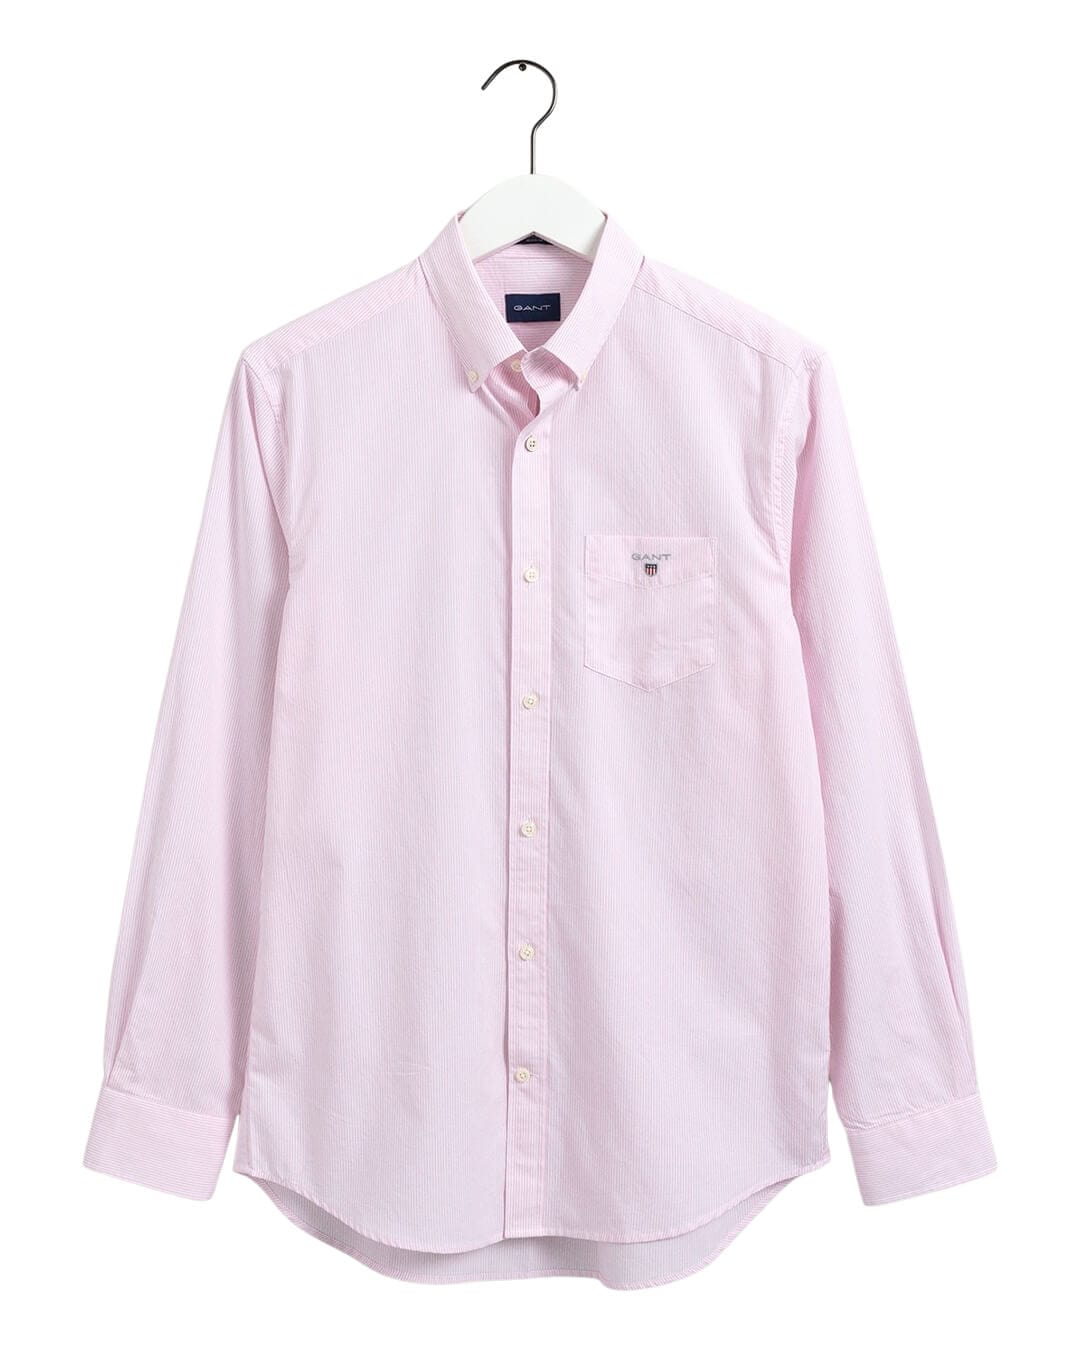 Gant Shirts Gant Regular Fit Banker Broadcloth Pink Shirt